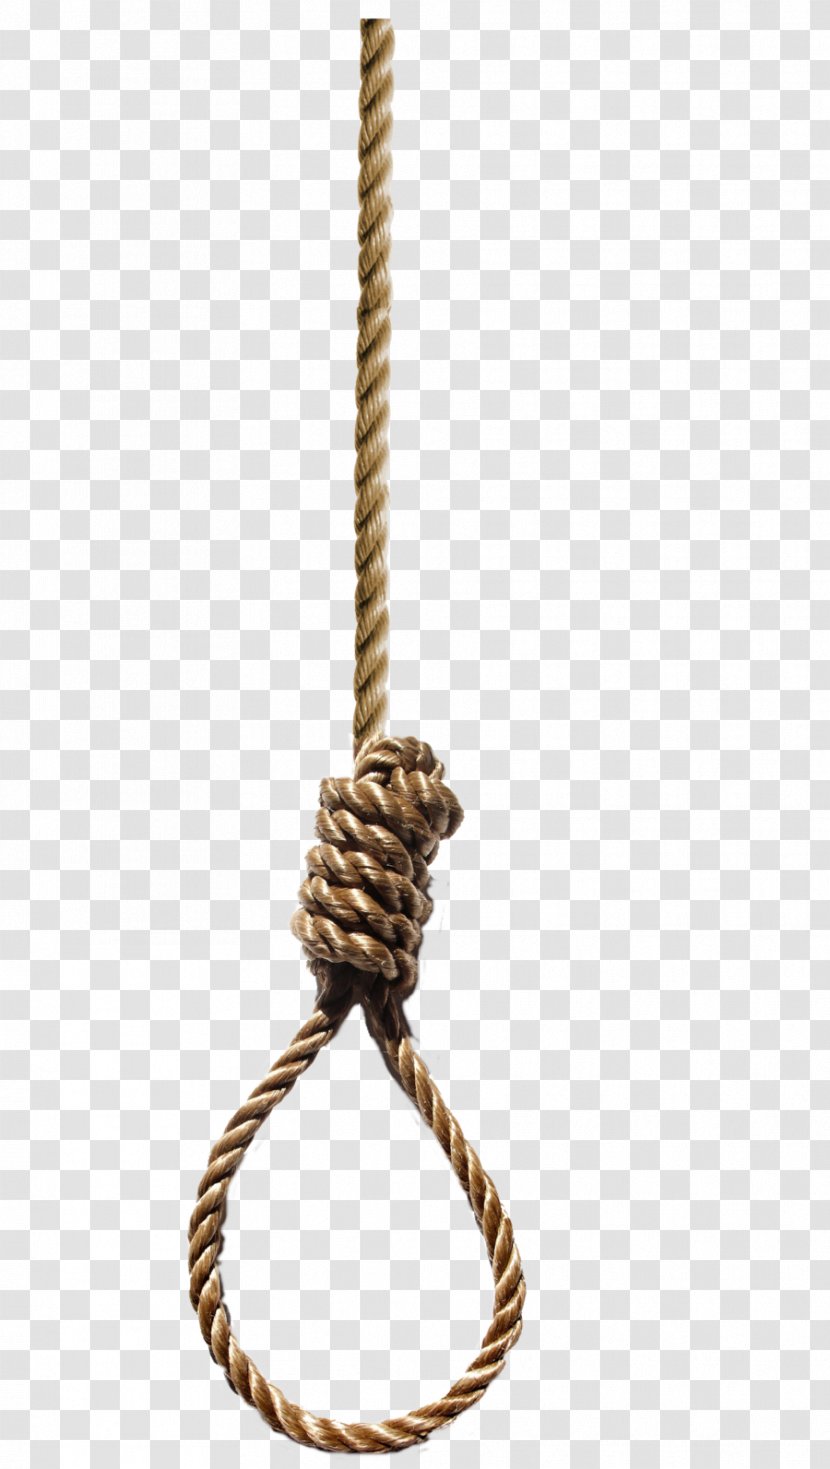 Noose Hangman's Knot Rope - Hanging Transparent PNG